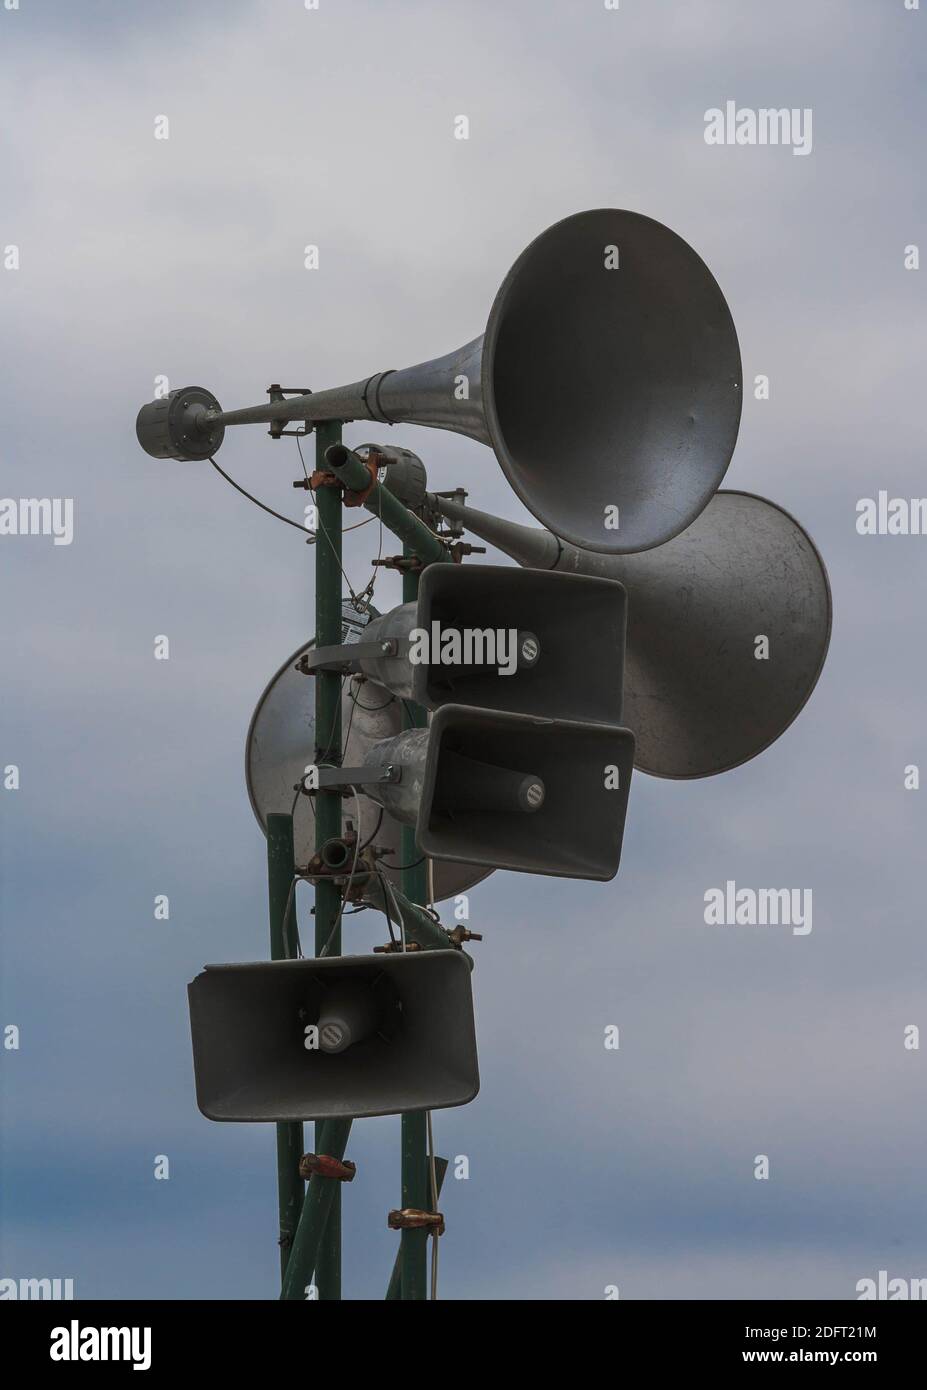 Tannoy oder Lautsprechersystem gegen einen dunklen, absenkenden Himmel - monochrom. Dystopische Vorschläge. Stockfoto